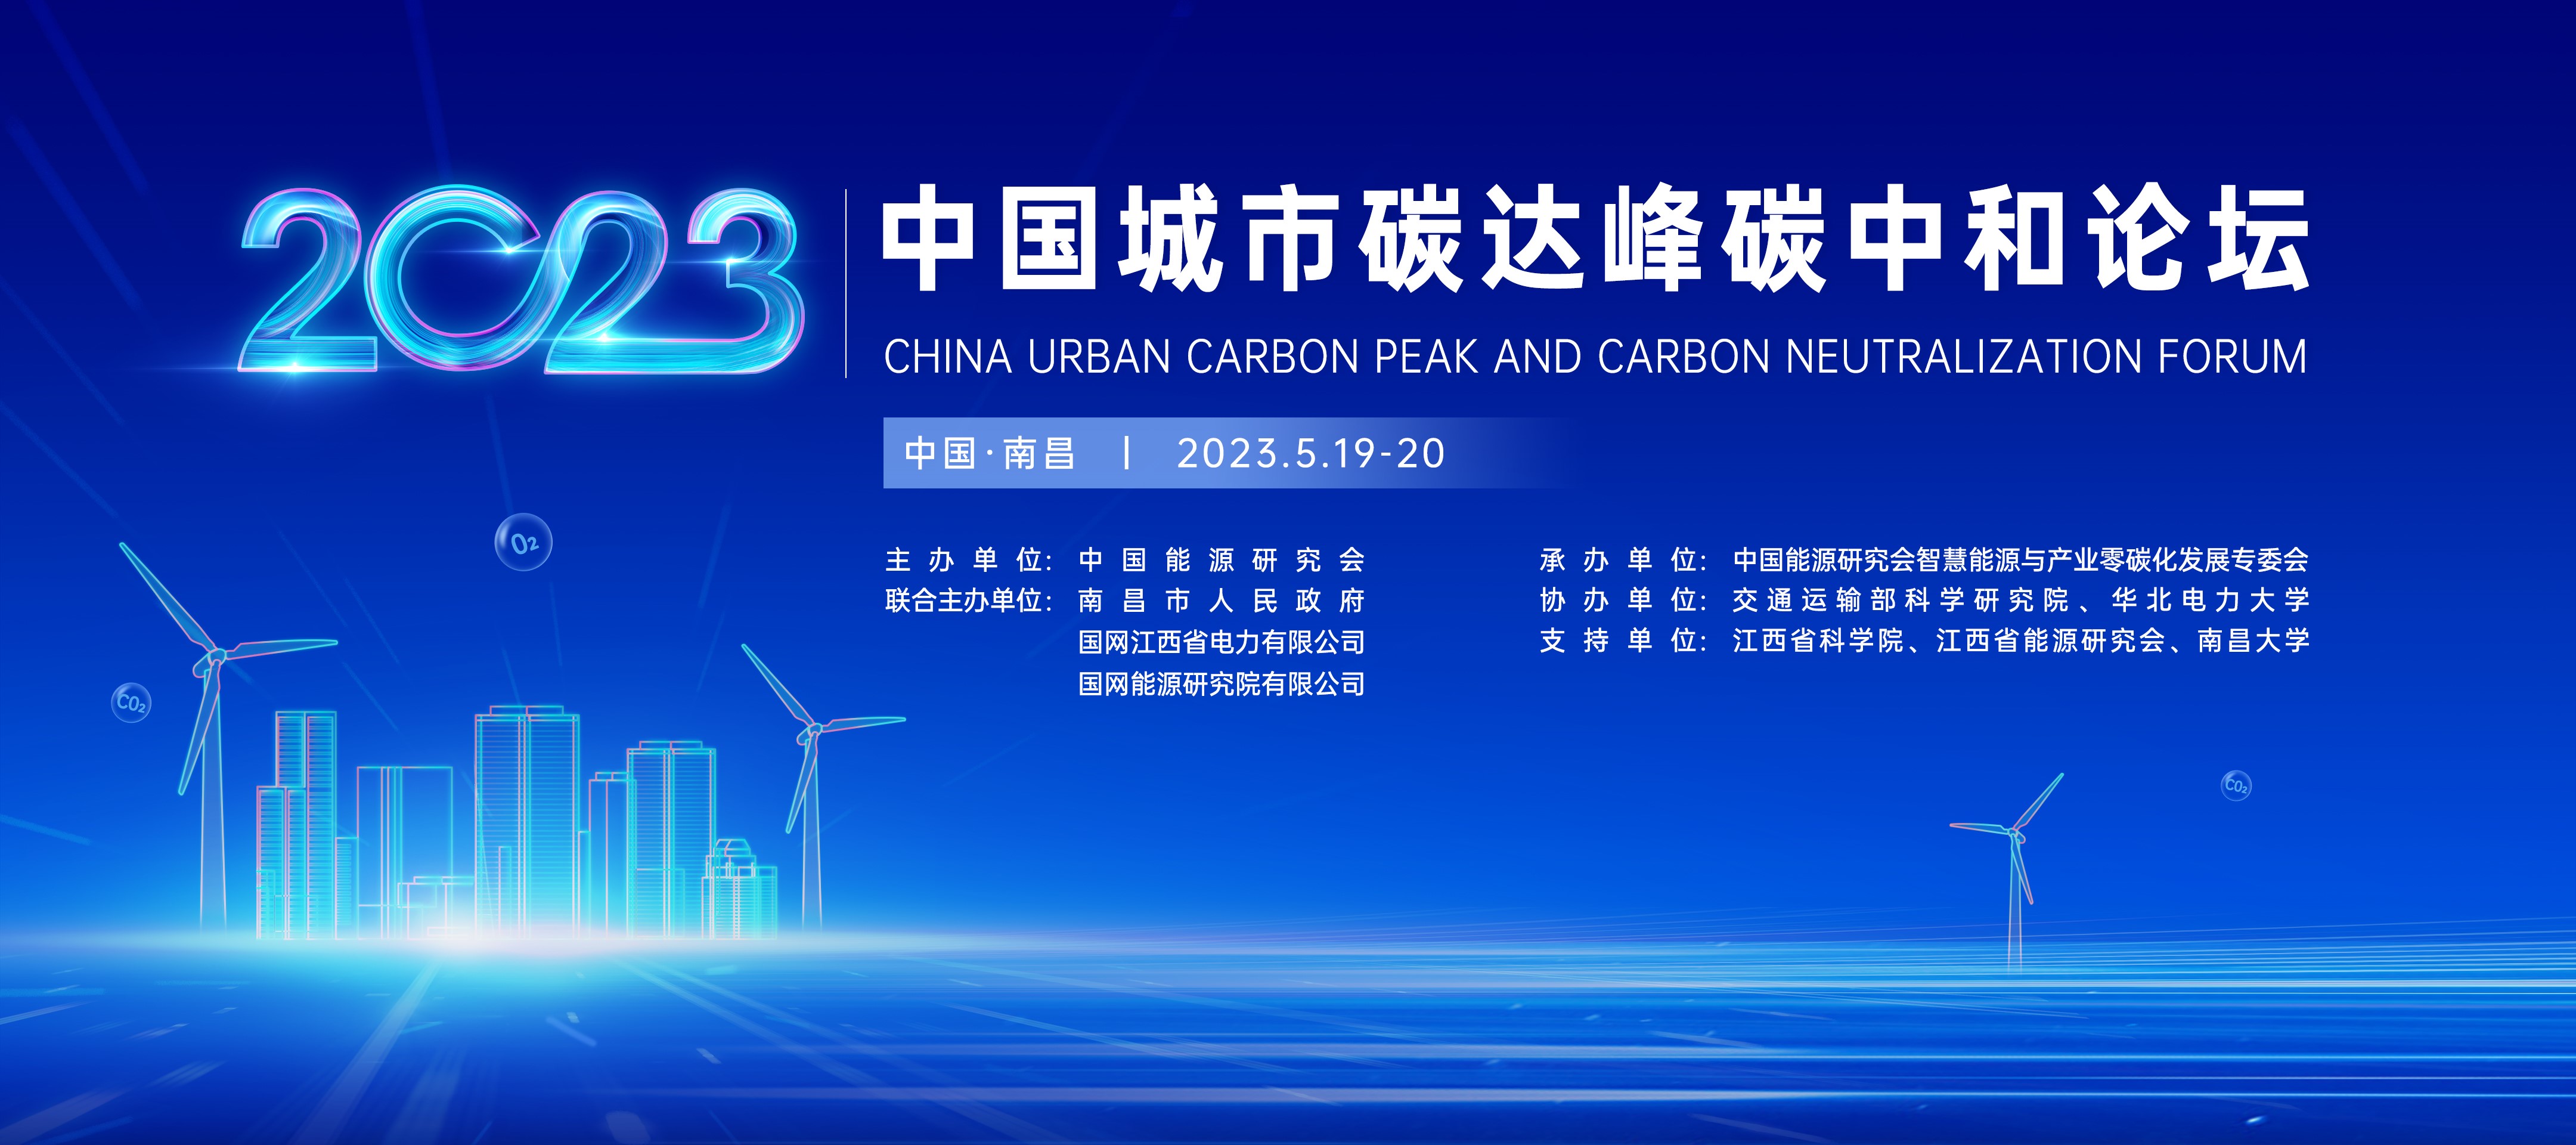 2023 中国城市碳达峰碳中和论坛.jpg